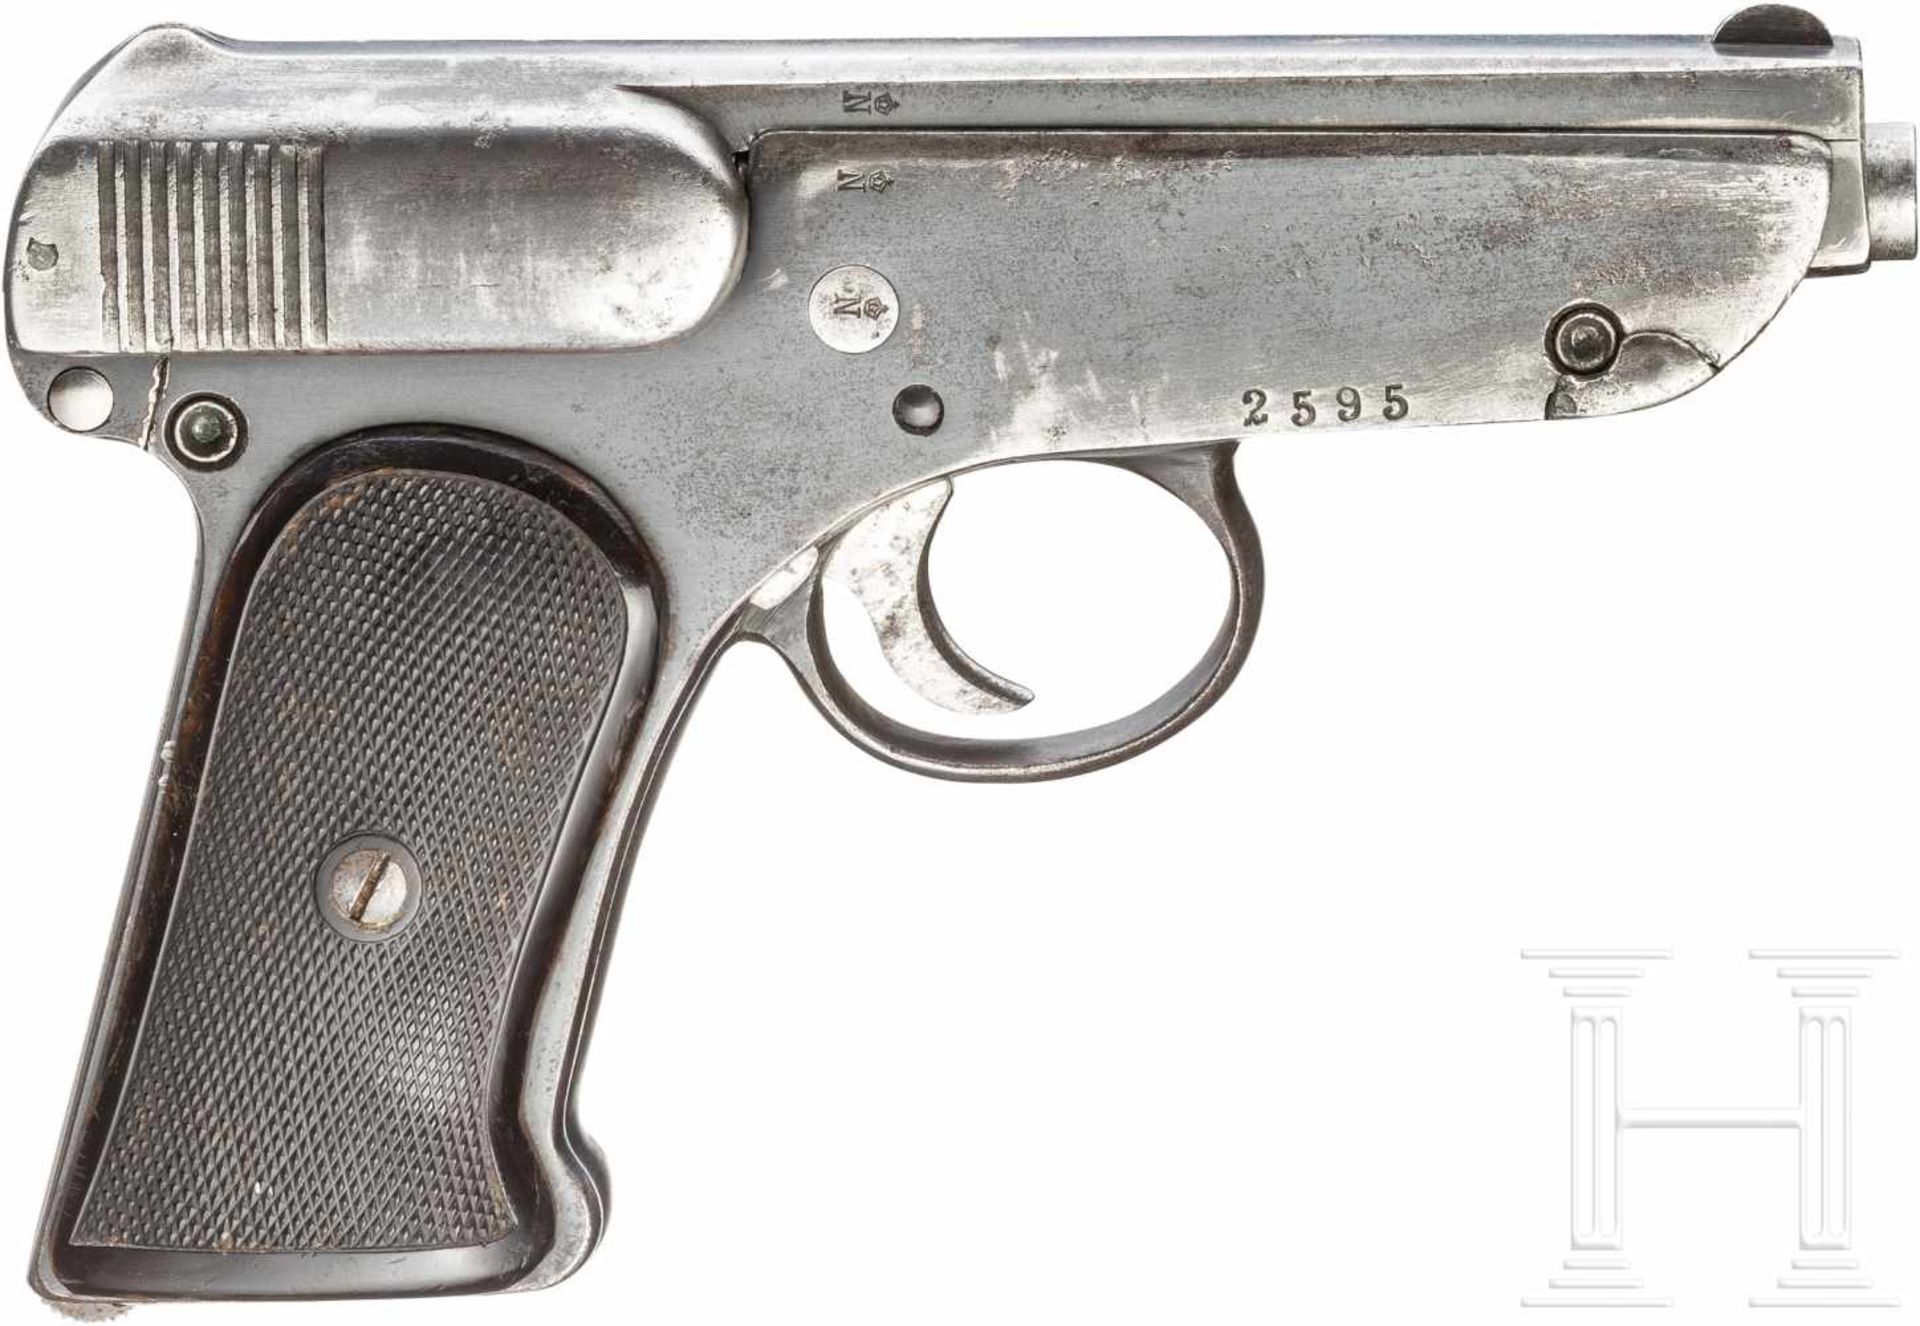 Pistole Jäger, 1. AusführungKal. 7,65 mm Brown., Nr. 2595, Nummerngleich. Blanker Lauf. - Bild 2 aus 2